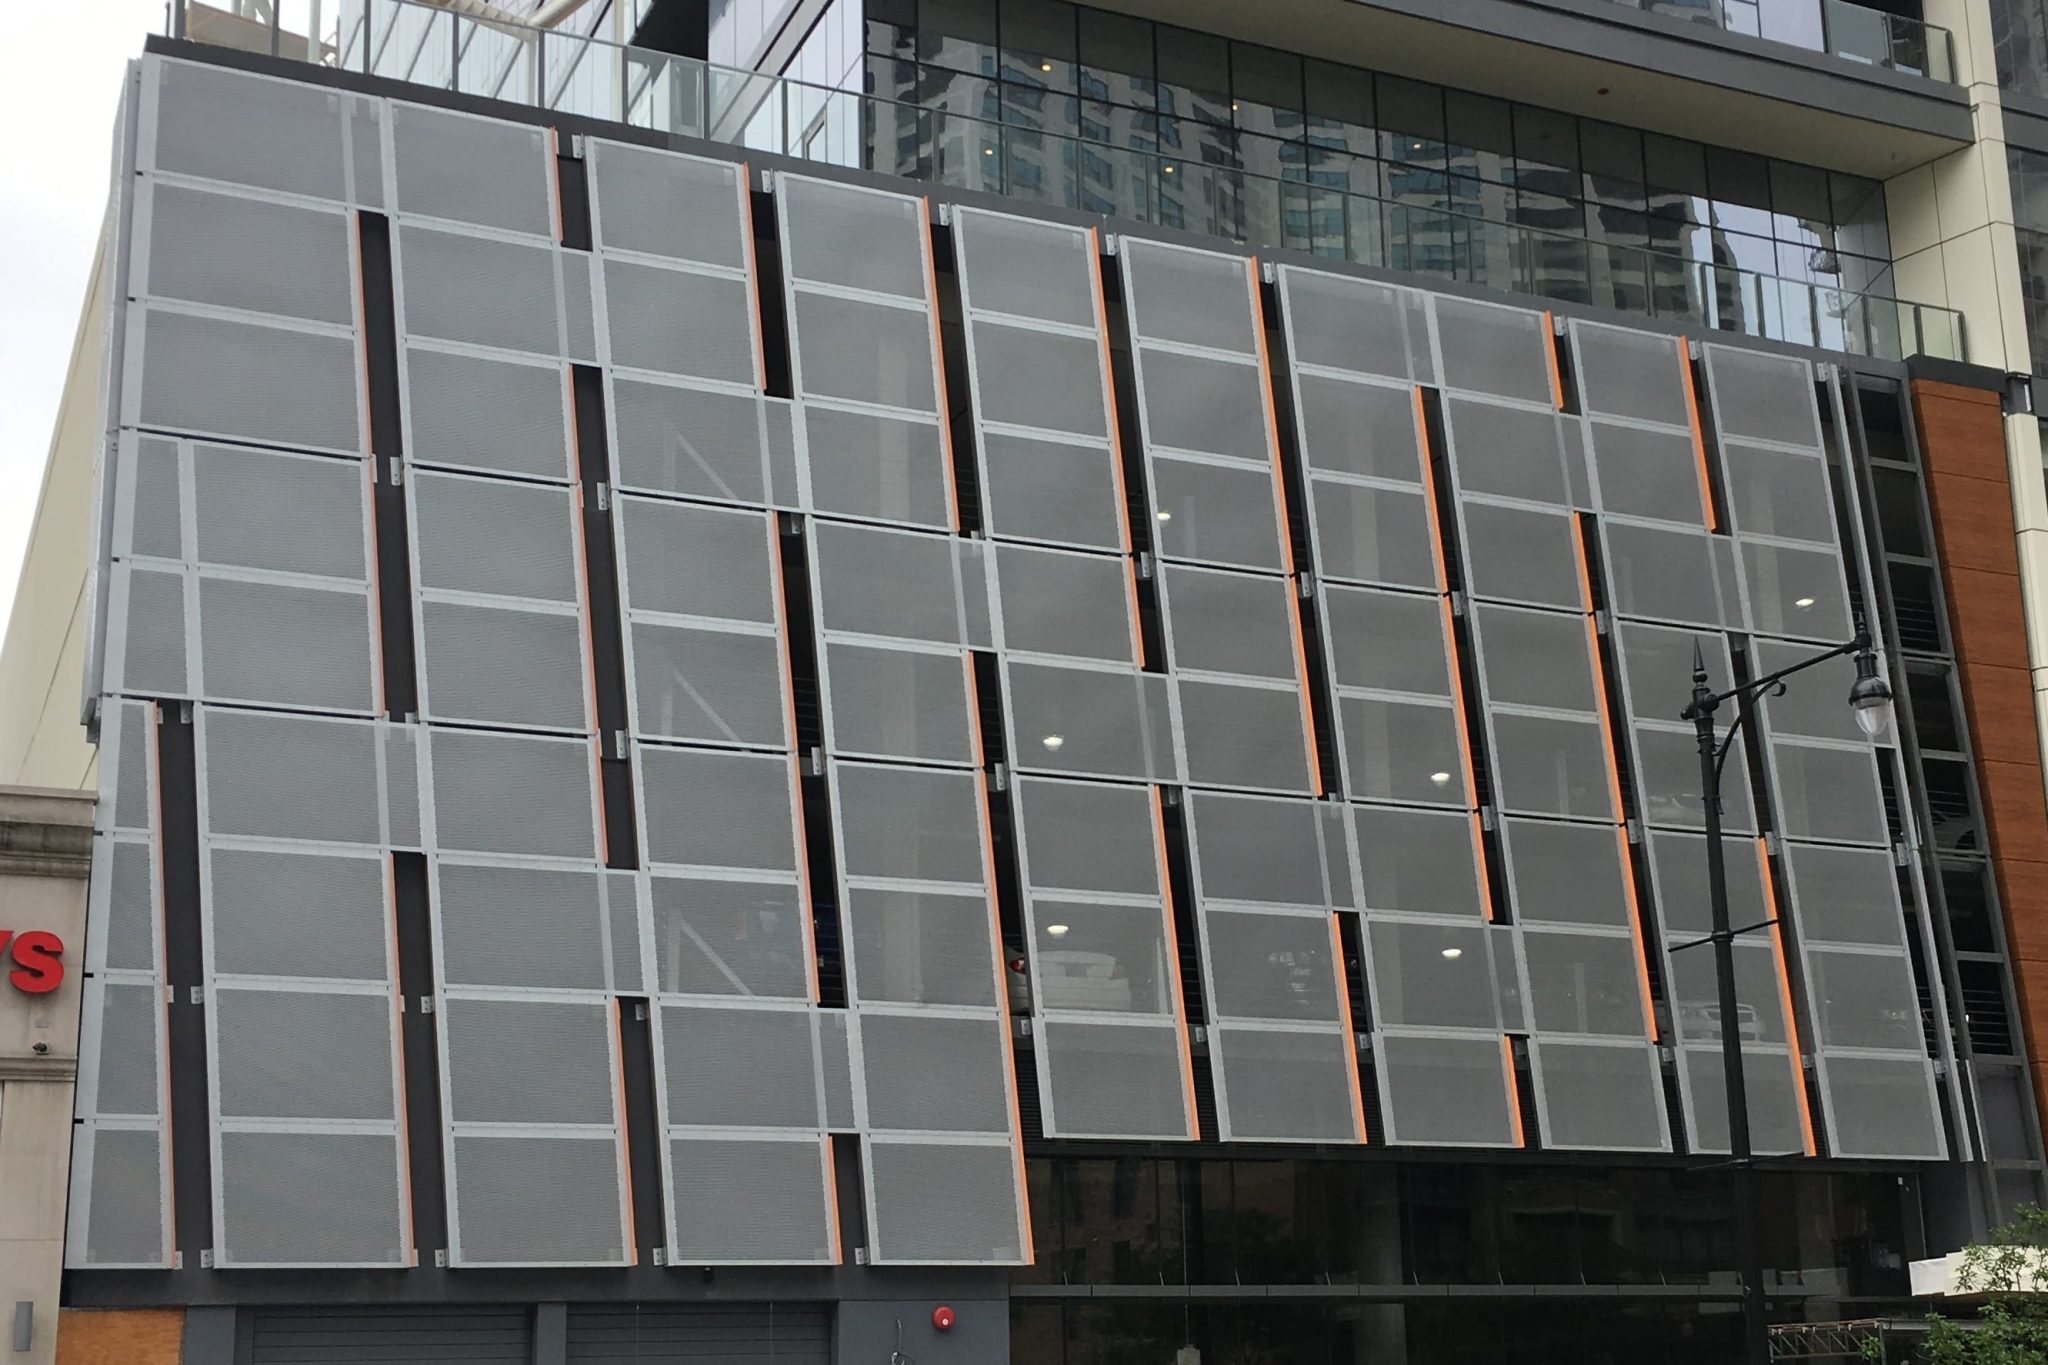 Perforated Aluminum Panels